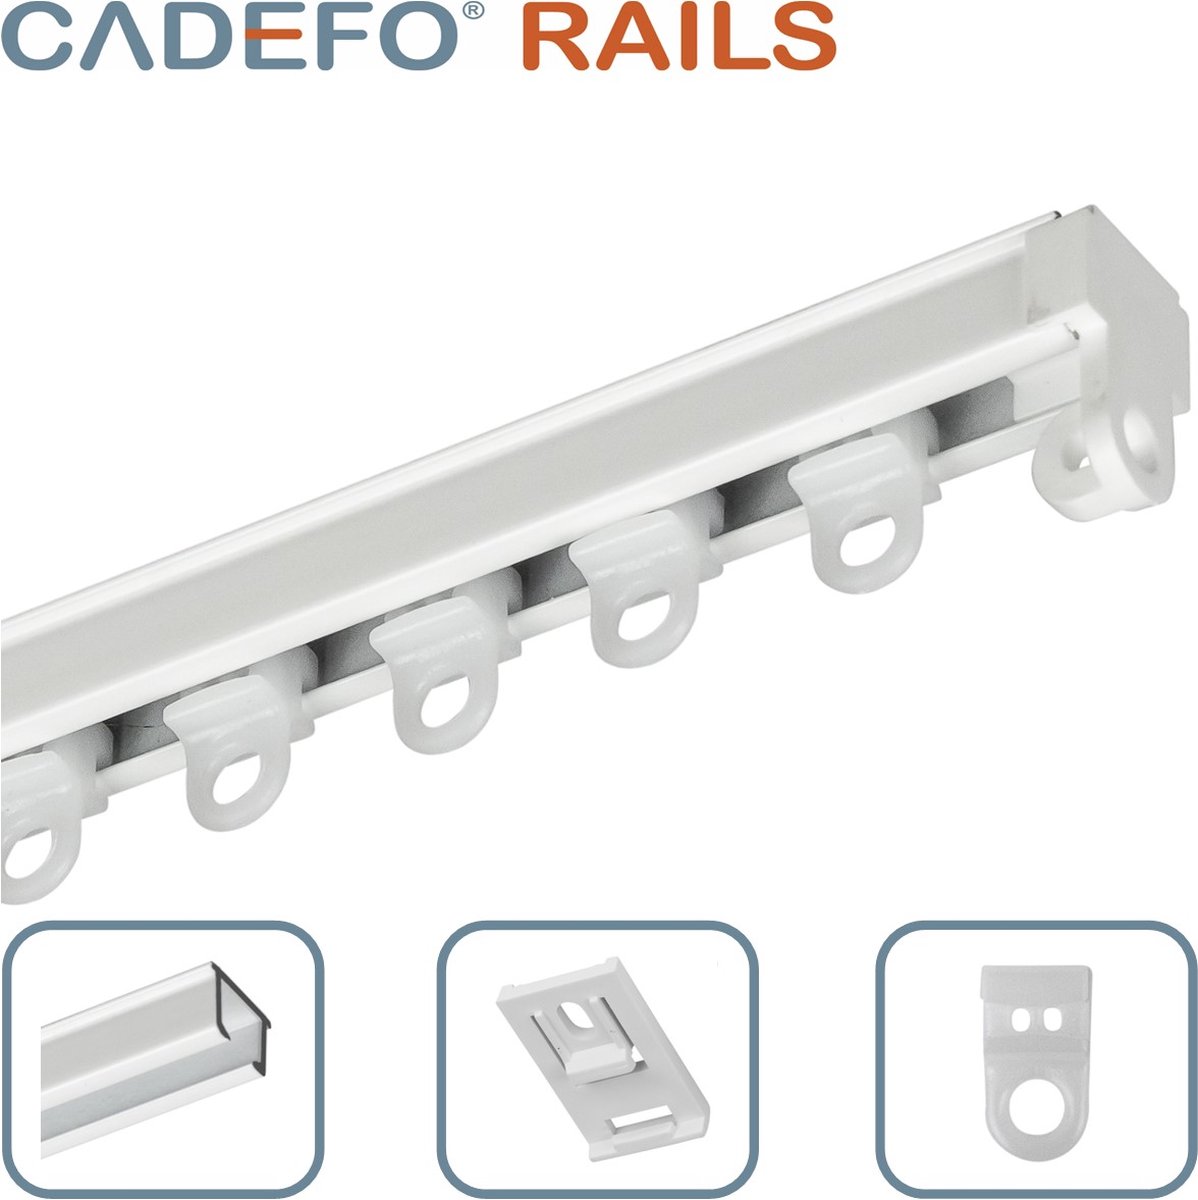 CADEFO RAILS (501 - 550 cm) Gordijnrails - Compleet op maat! - UIT 1 STUK - Leverbaar tot 6 meter - Plafondbevestiging - Lengte 532 cm